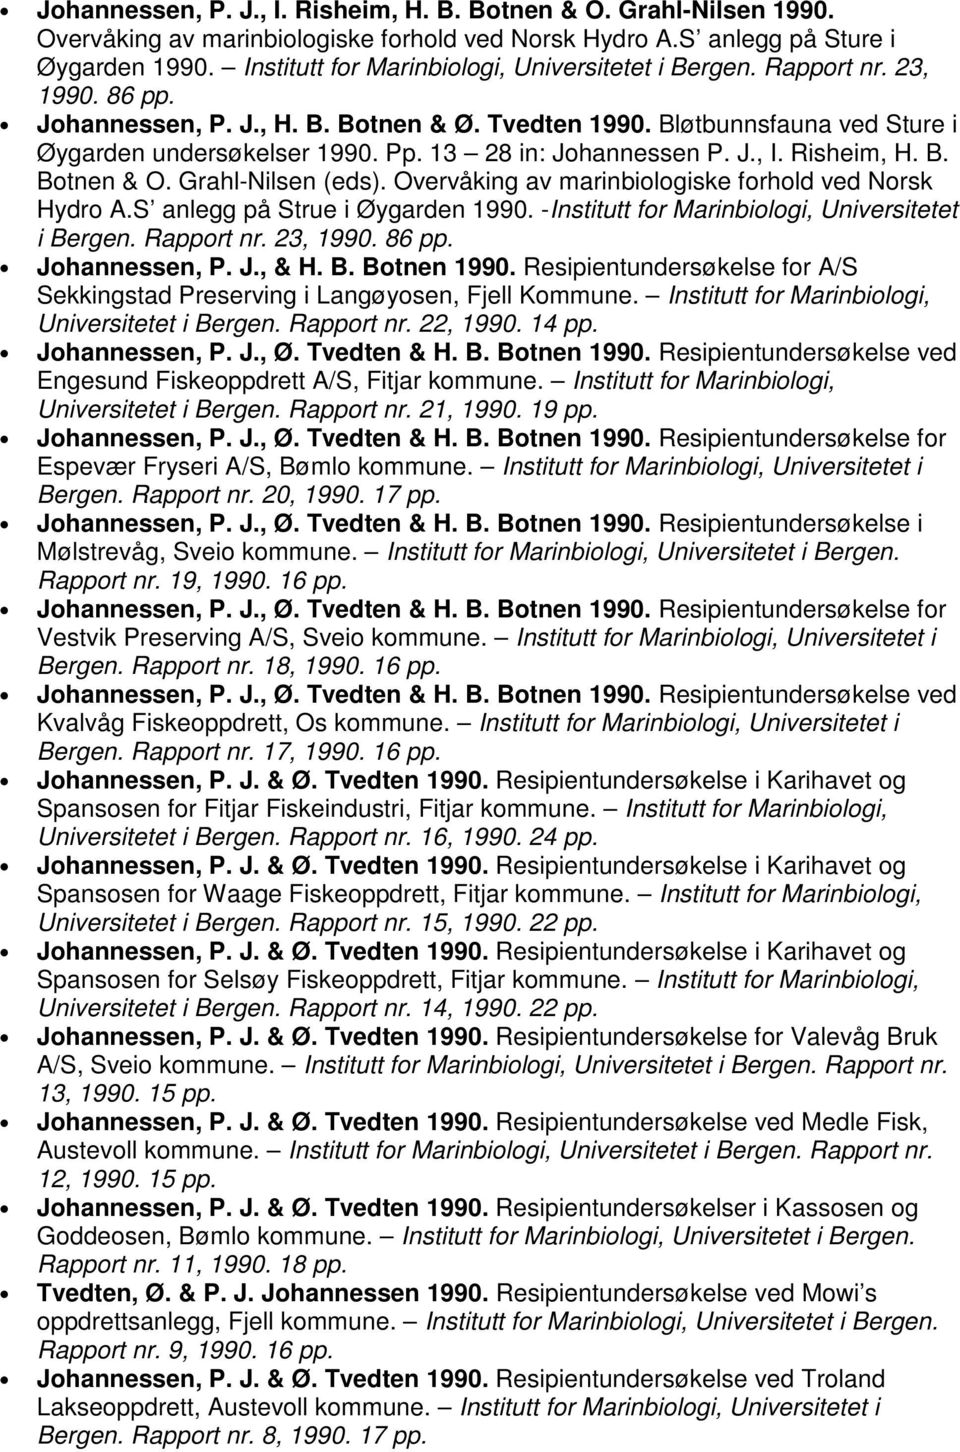 13 28 in: Johannessen P. J., I. Risheim, H. B. Botnen & O. Grahl-Nilsen (eds). Overvåking av marinbiologiske forhold ved Norsk Hydro A.S anlegg på Strue i Øygarden 1990.